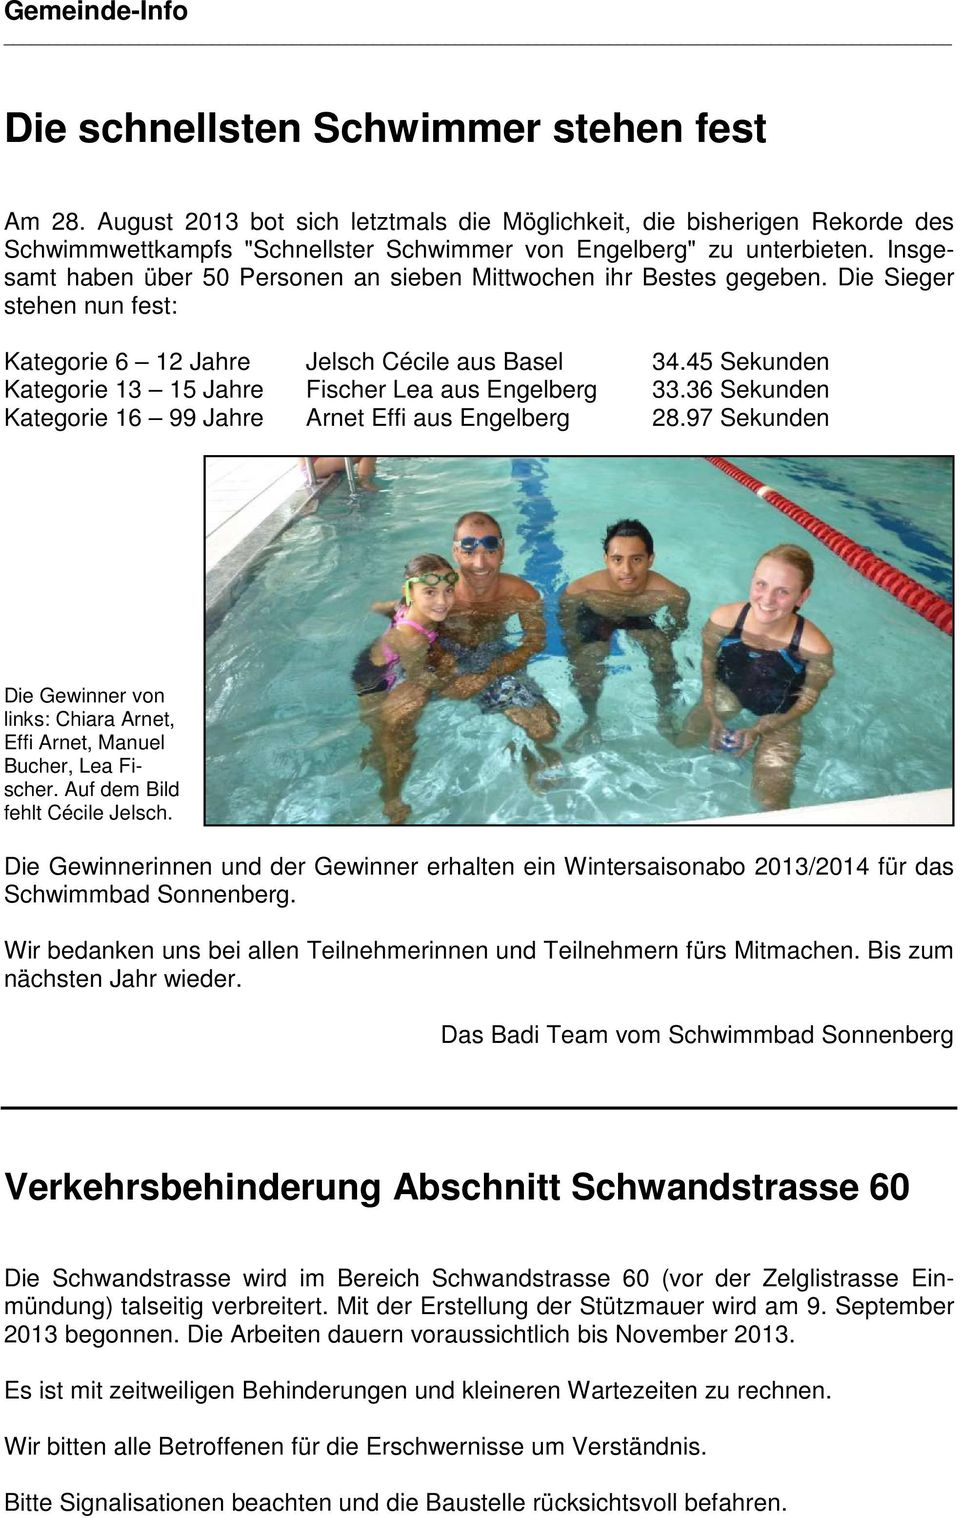 45 Sekunden Kategorie 13 15 Jahre Fischer Lea aus Engelberg 33.36 Sekunden Kategorie 16 99 Jahre Arnet Effi aus Engelberg 28.